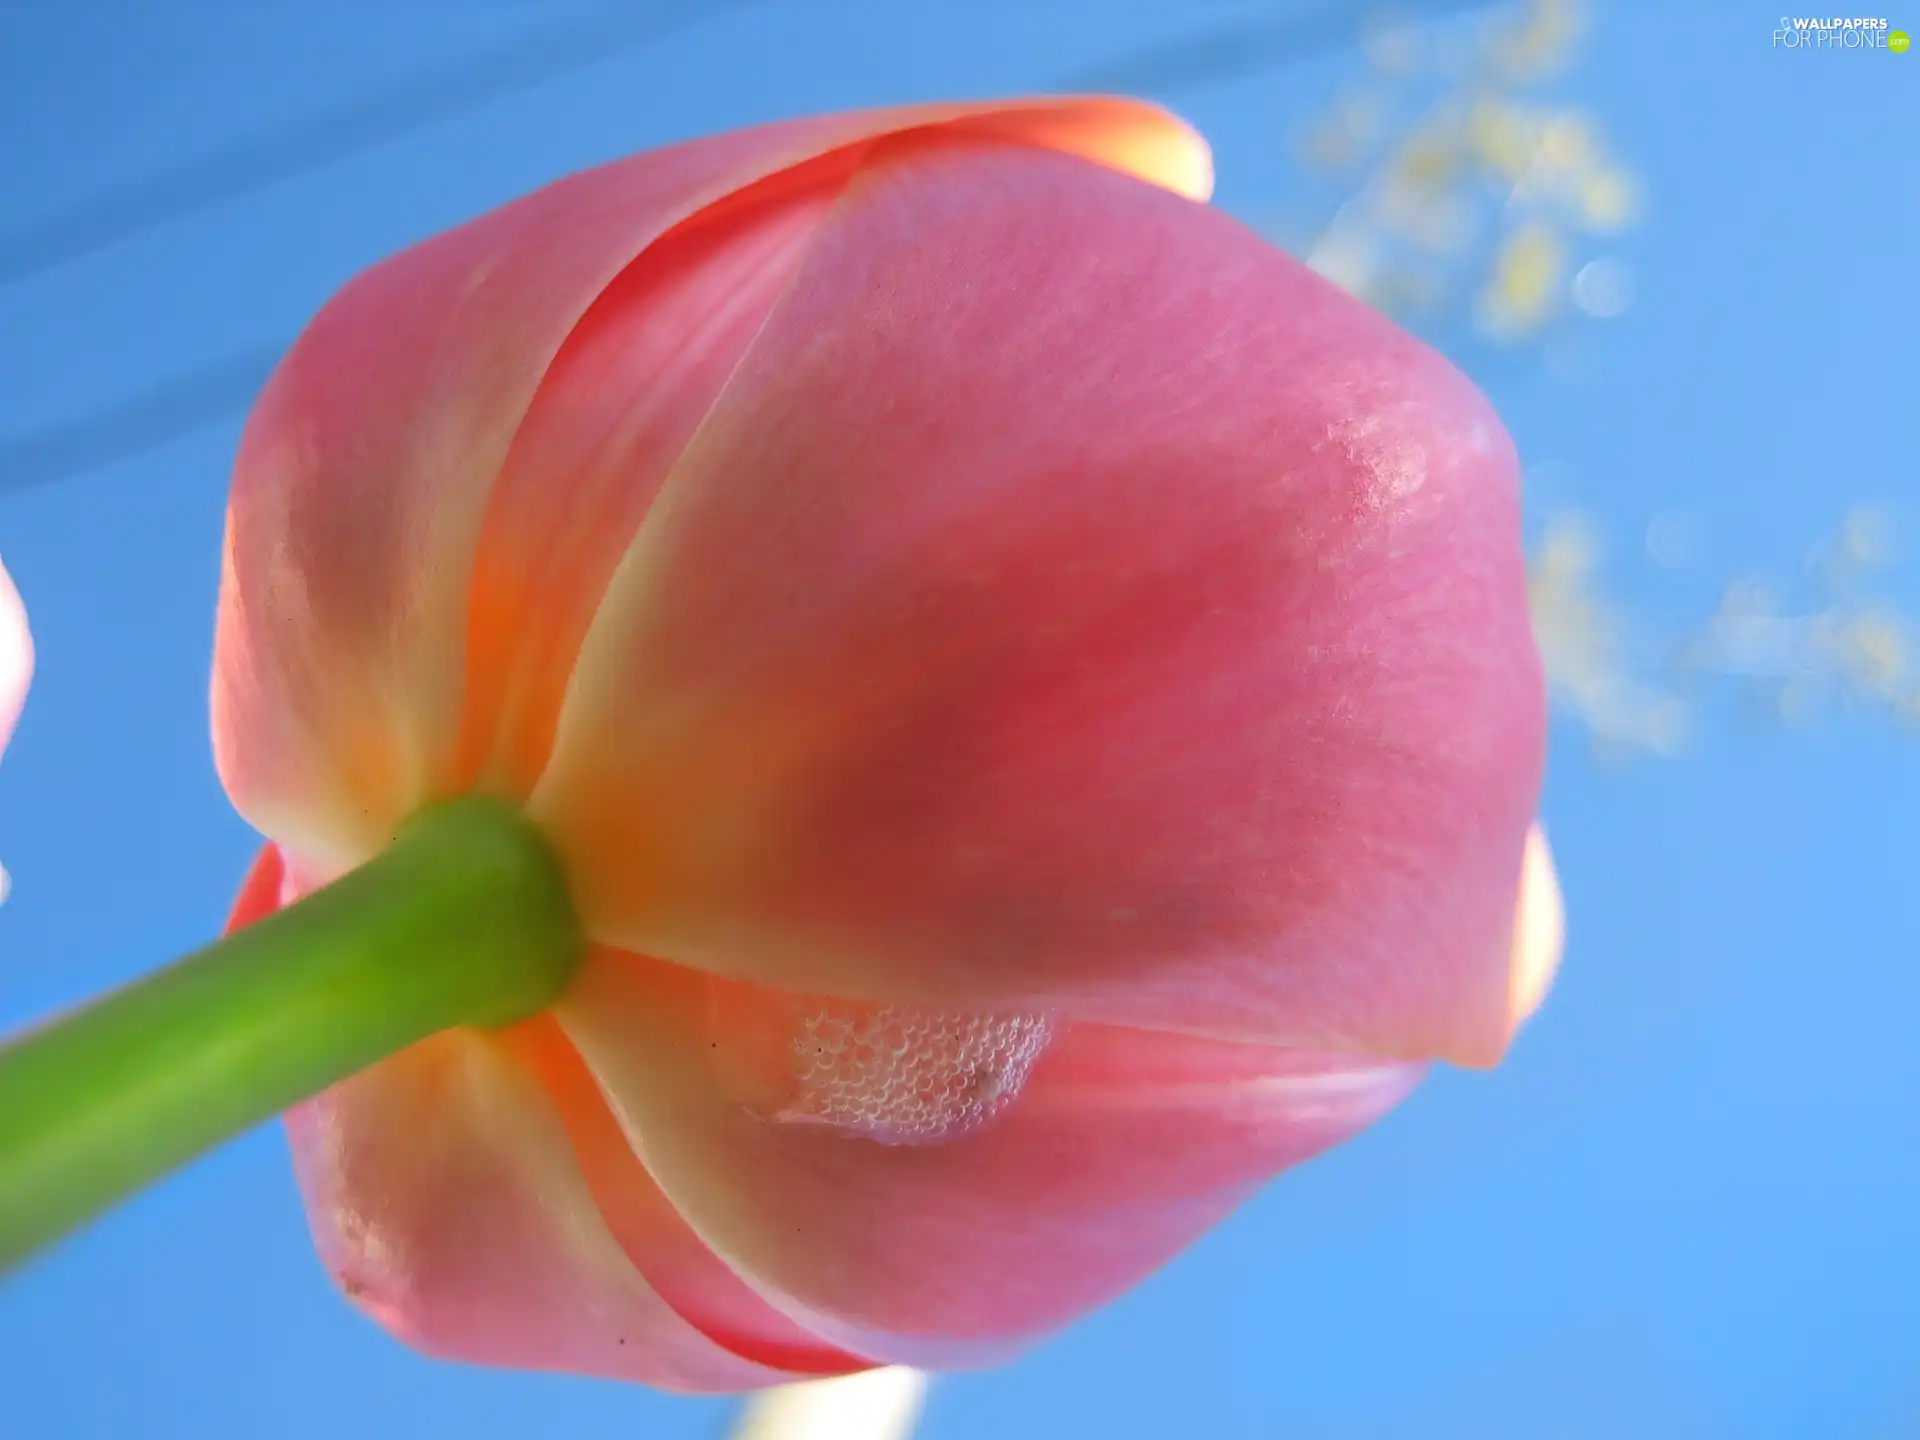 Pink, tulip